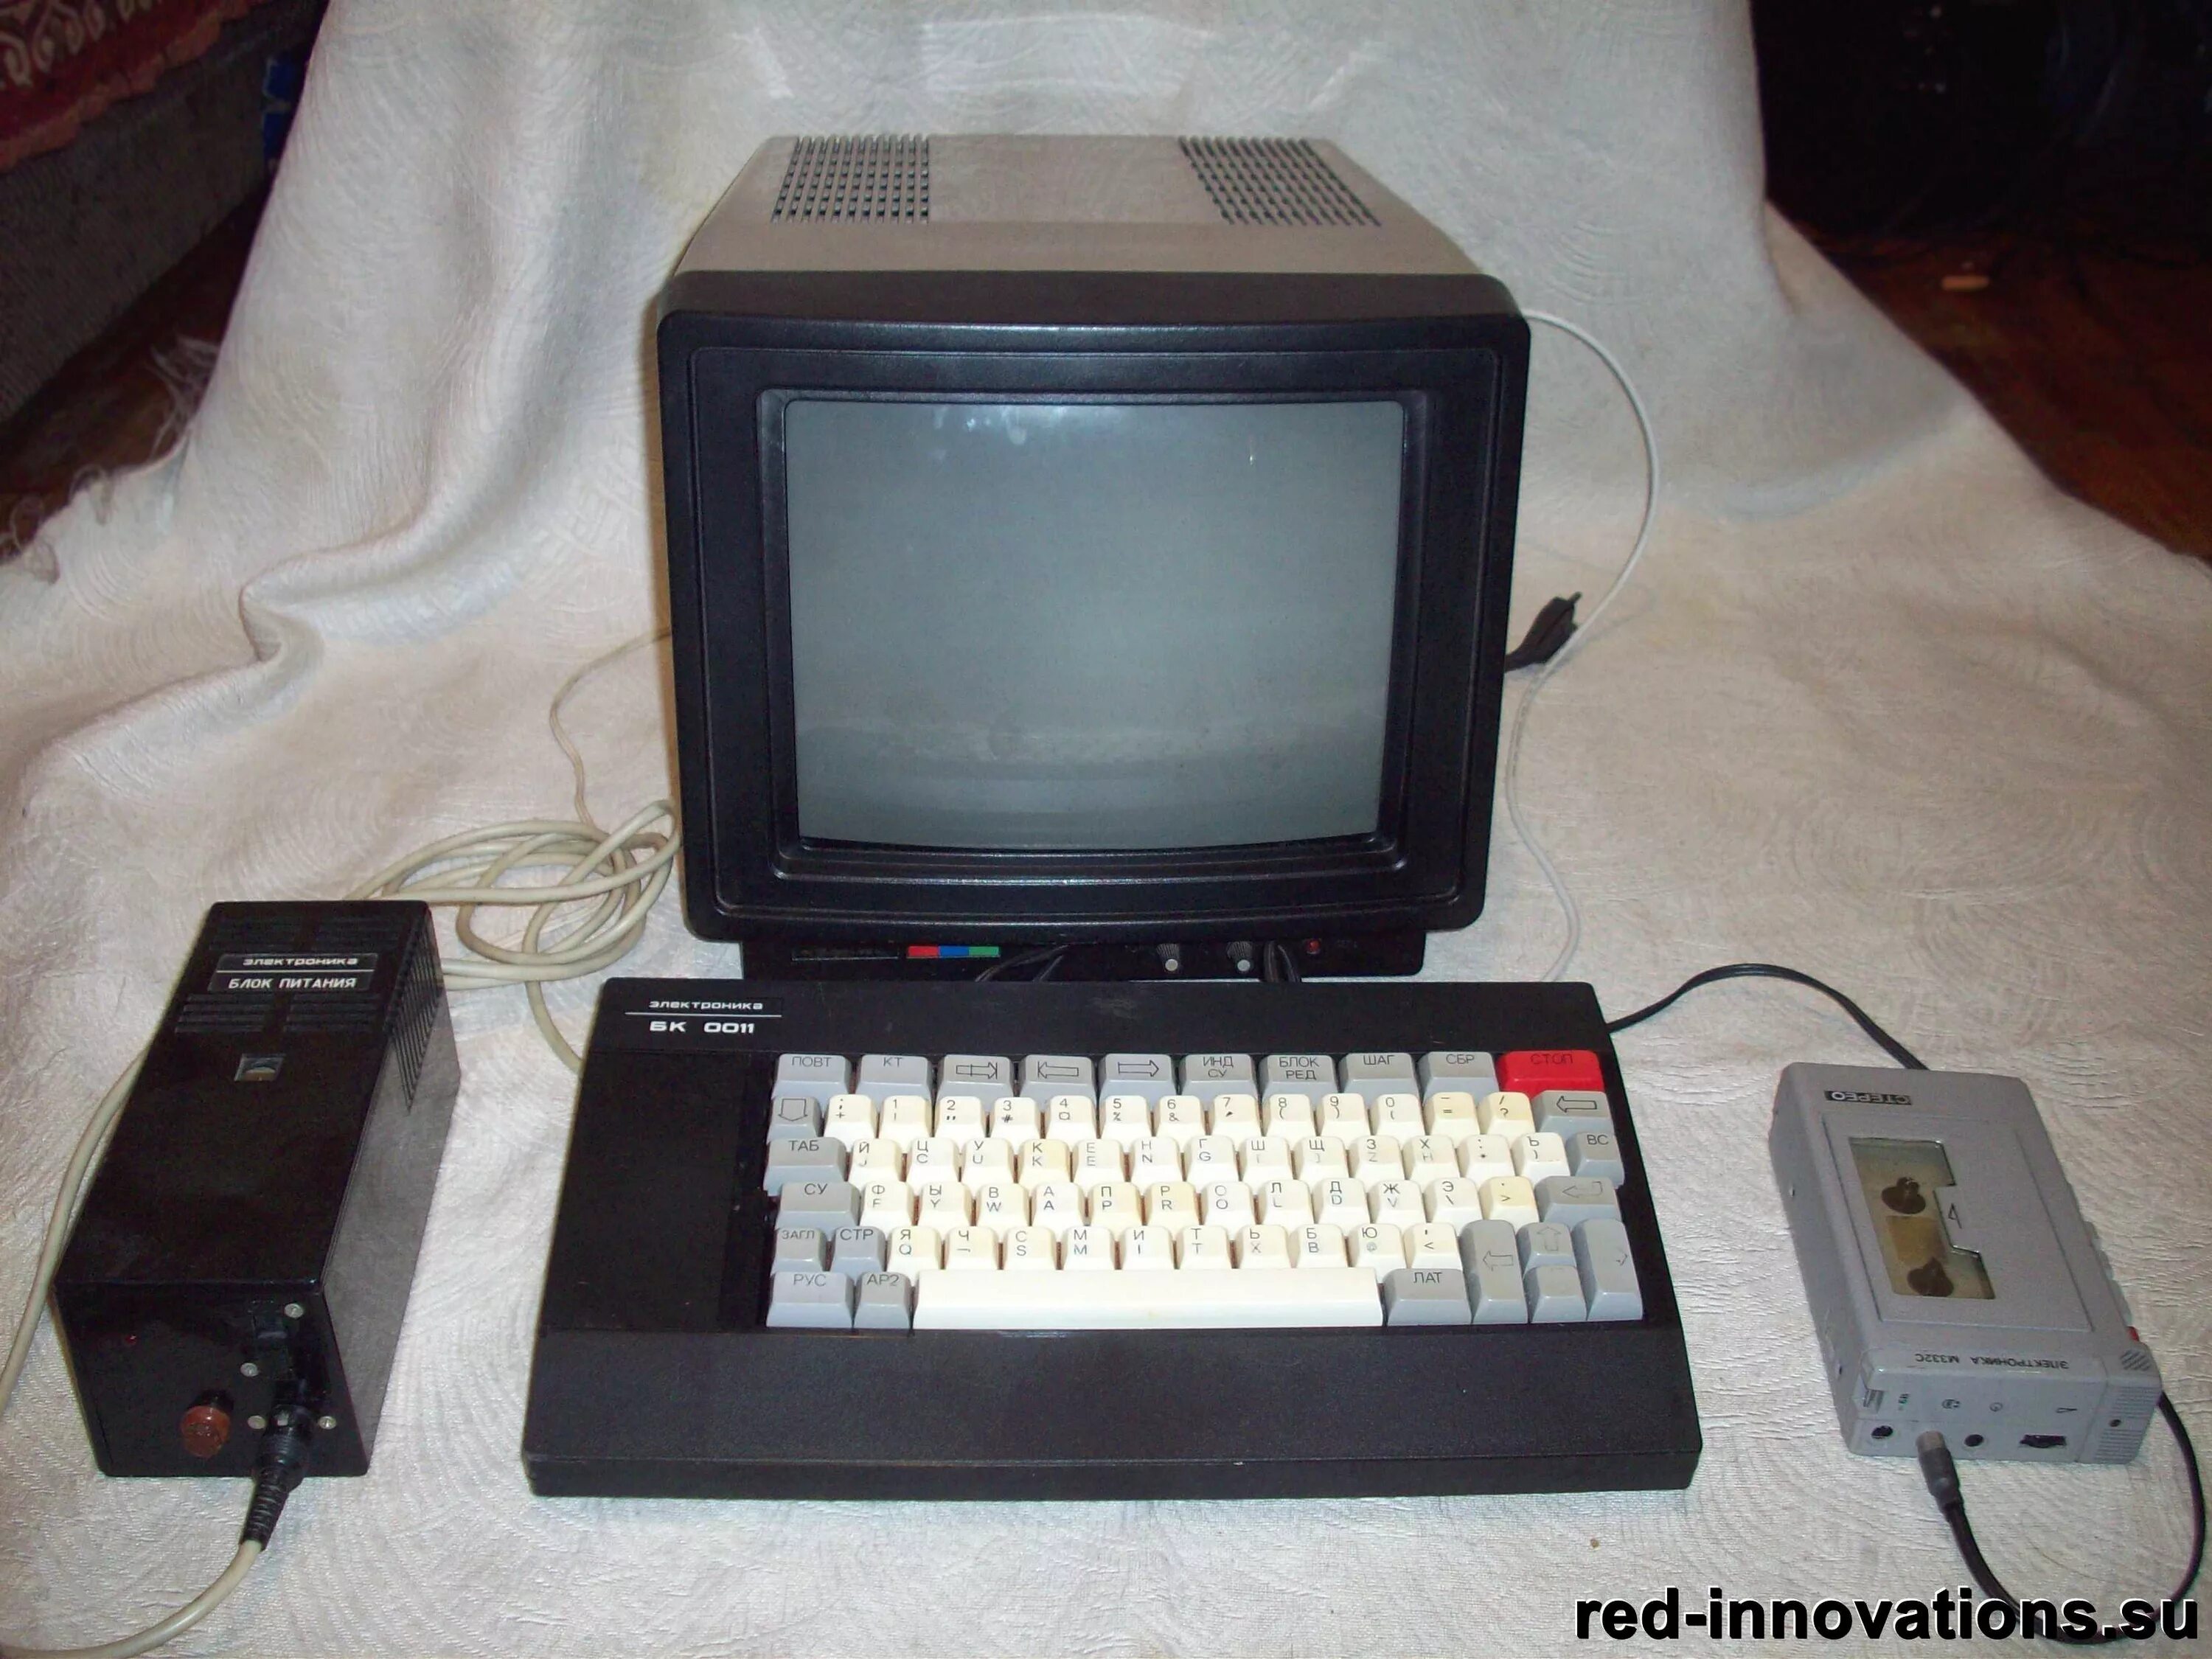 Как назывались первые компьютеры в ссср. Электроника БК-0010. Электроника БК 0011. Советский компьютер электроника БК-0010. Электроника БК 001.